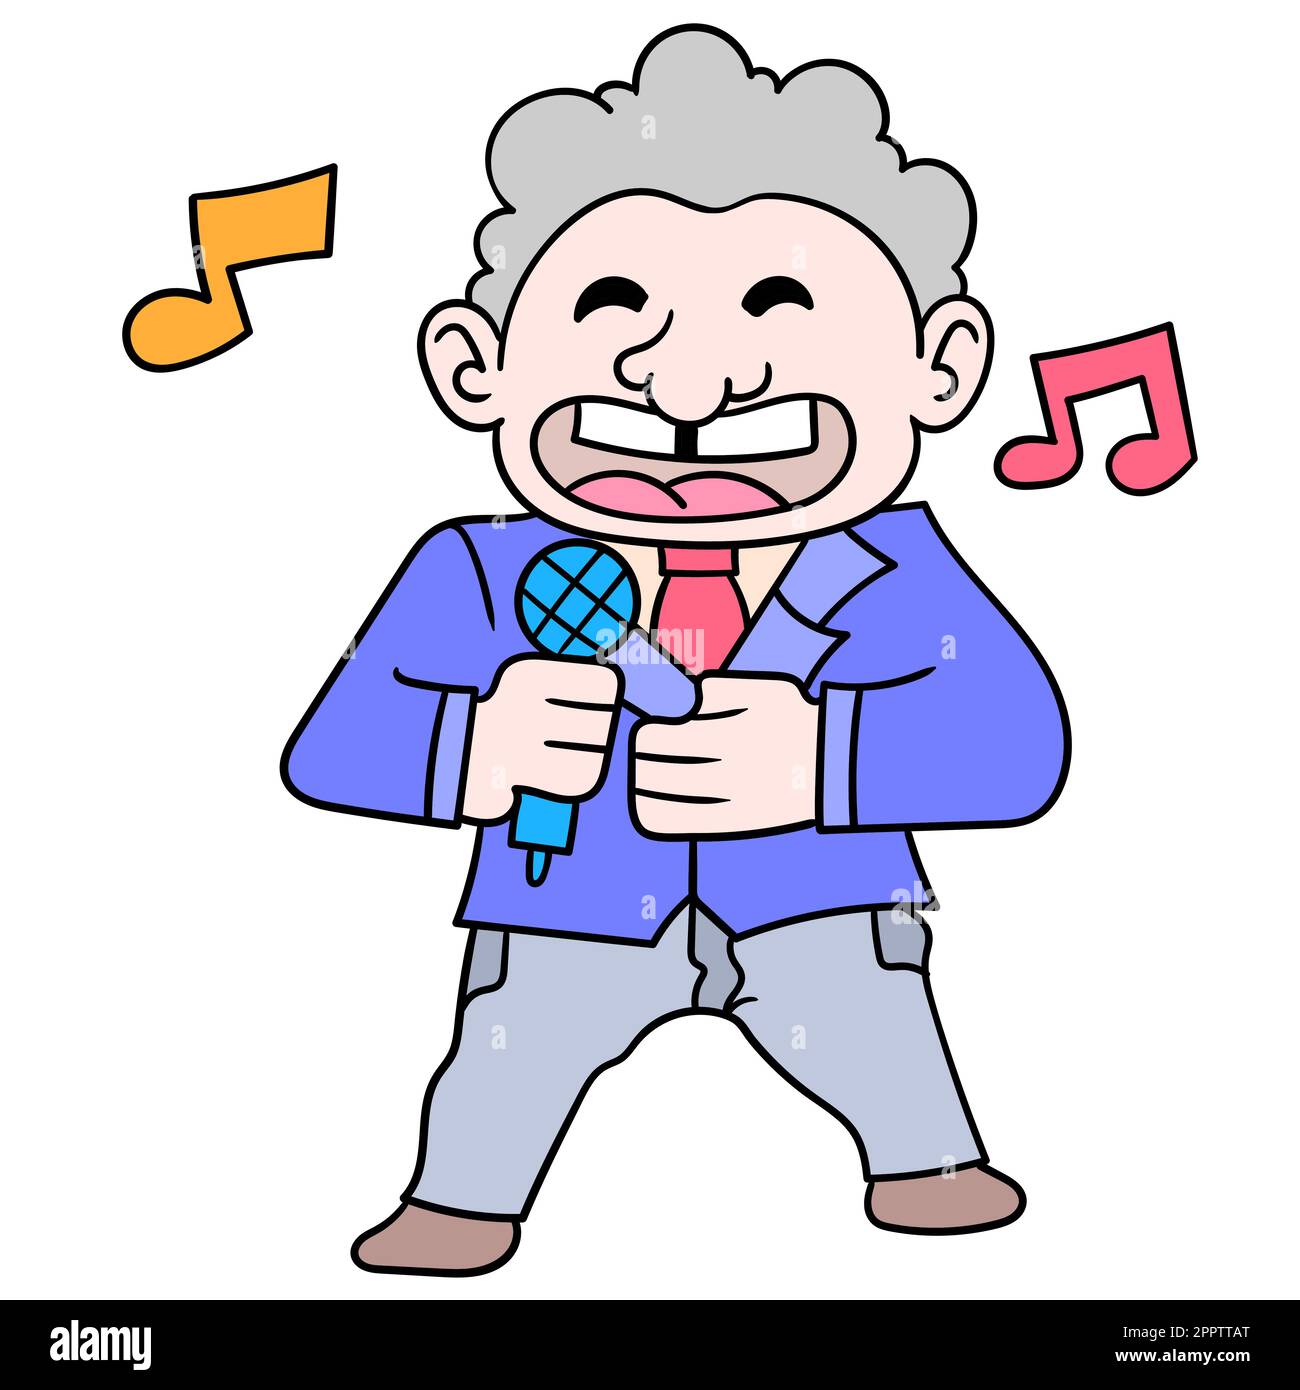 un vieil homme avec un visage heureux chantant sa chanson préférée, doodle icône image kawaii Illustration de Vecteur